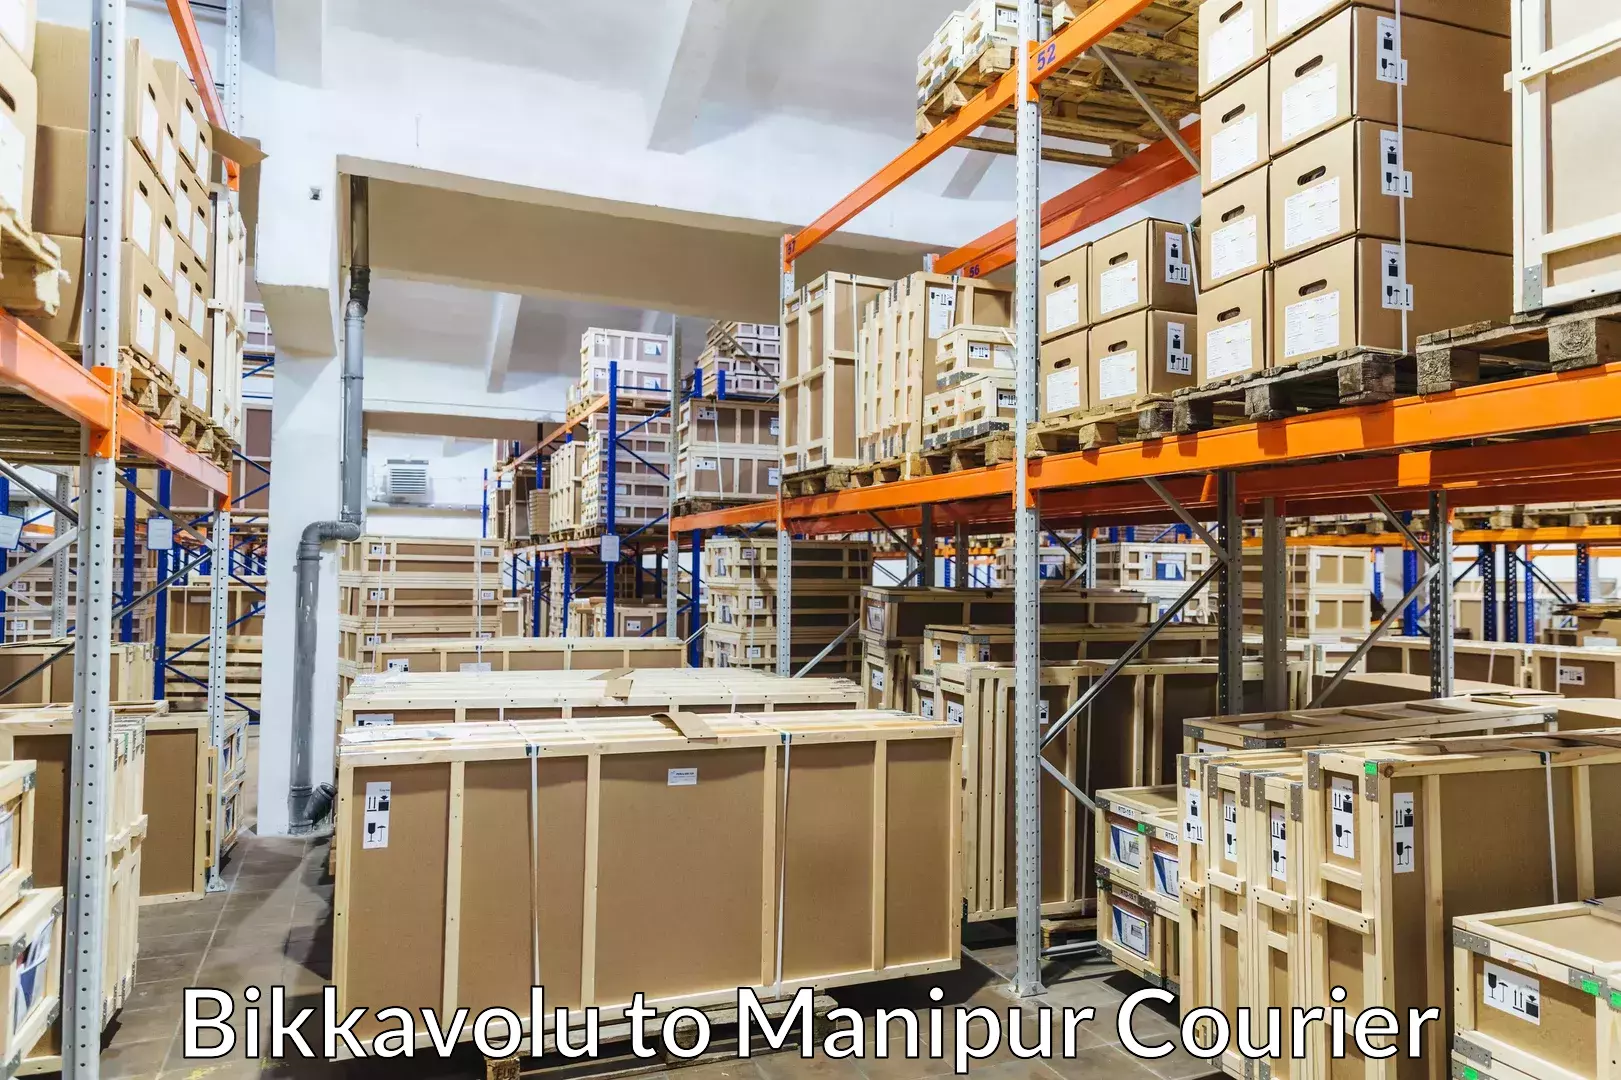 Door-to-door relocation services Bikkavolu to Manipur